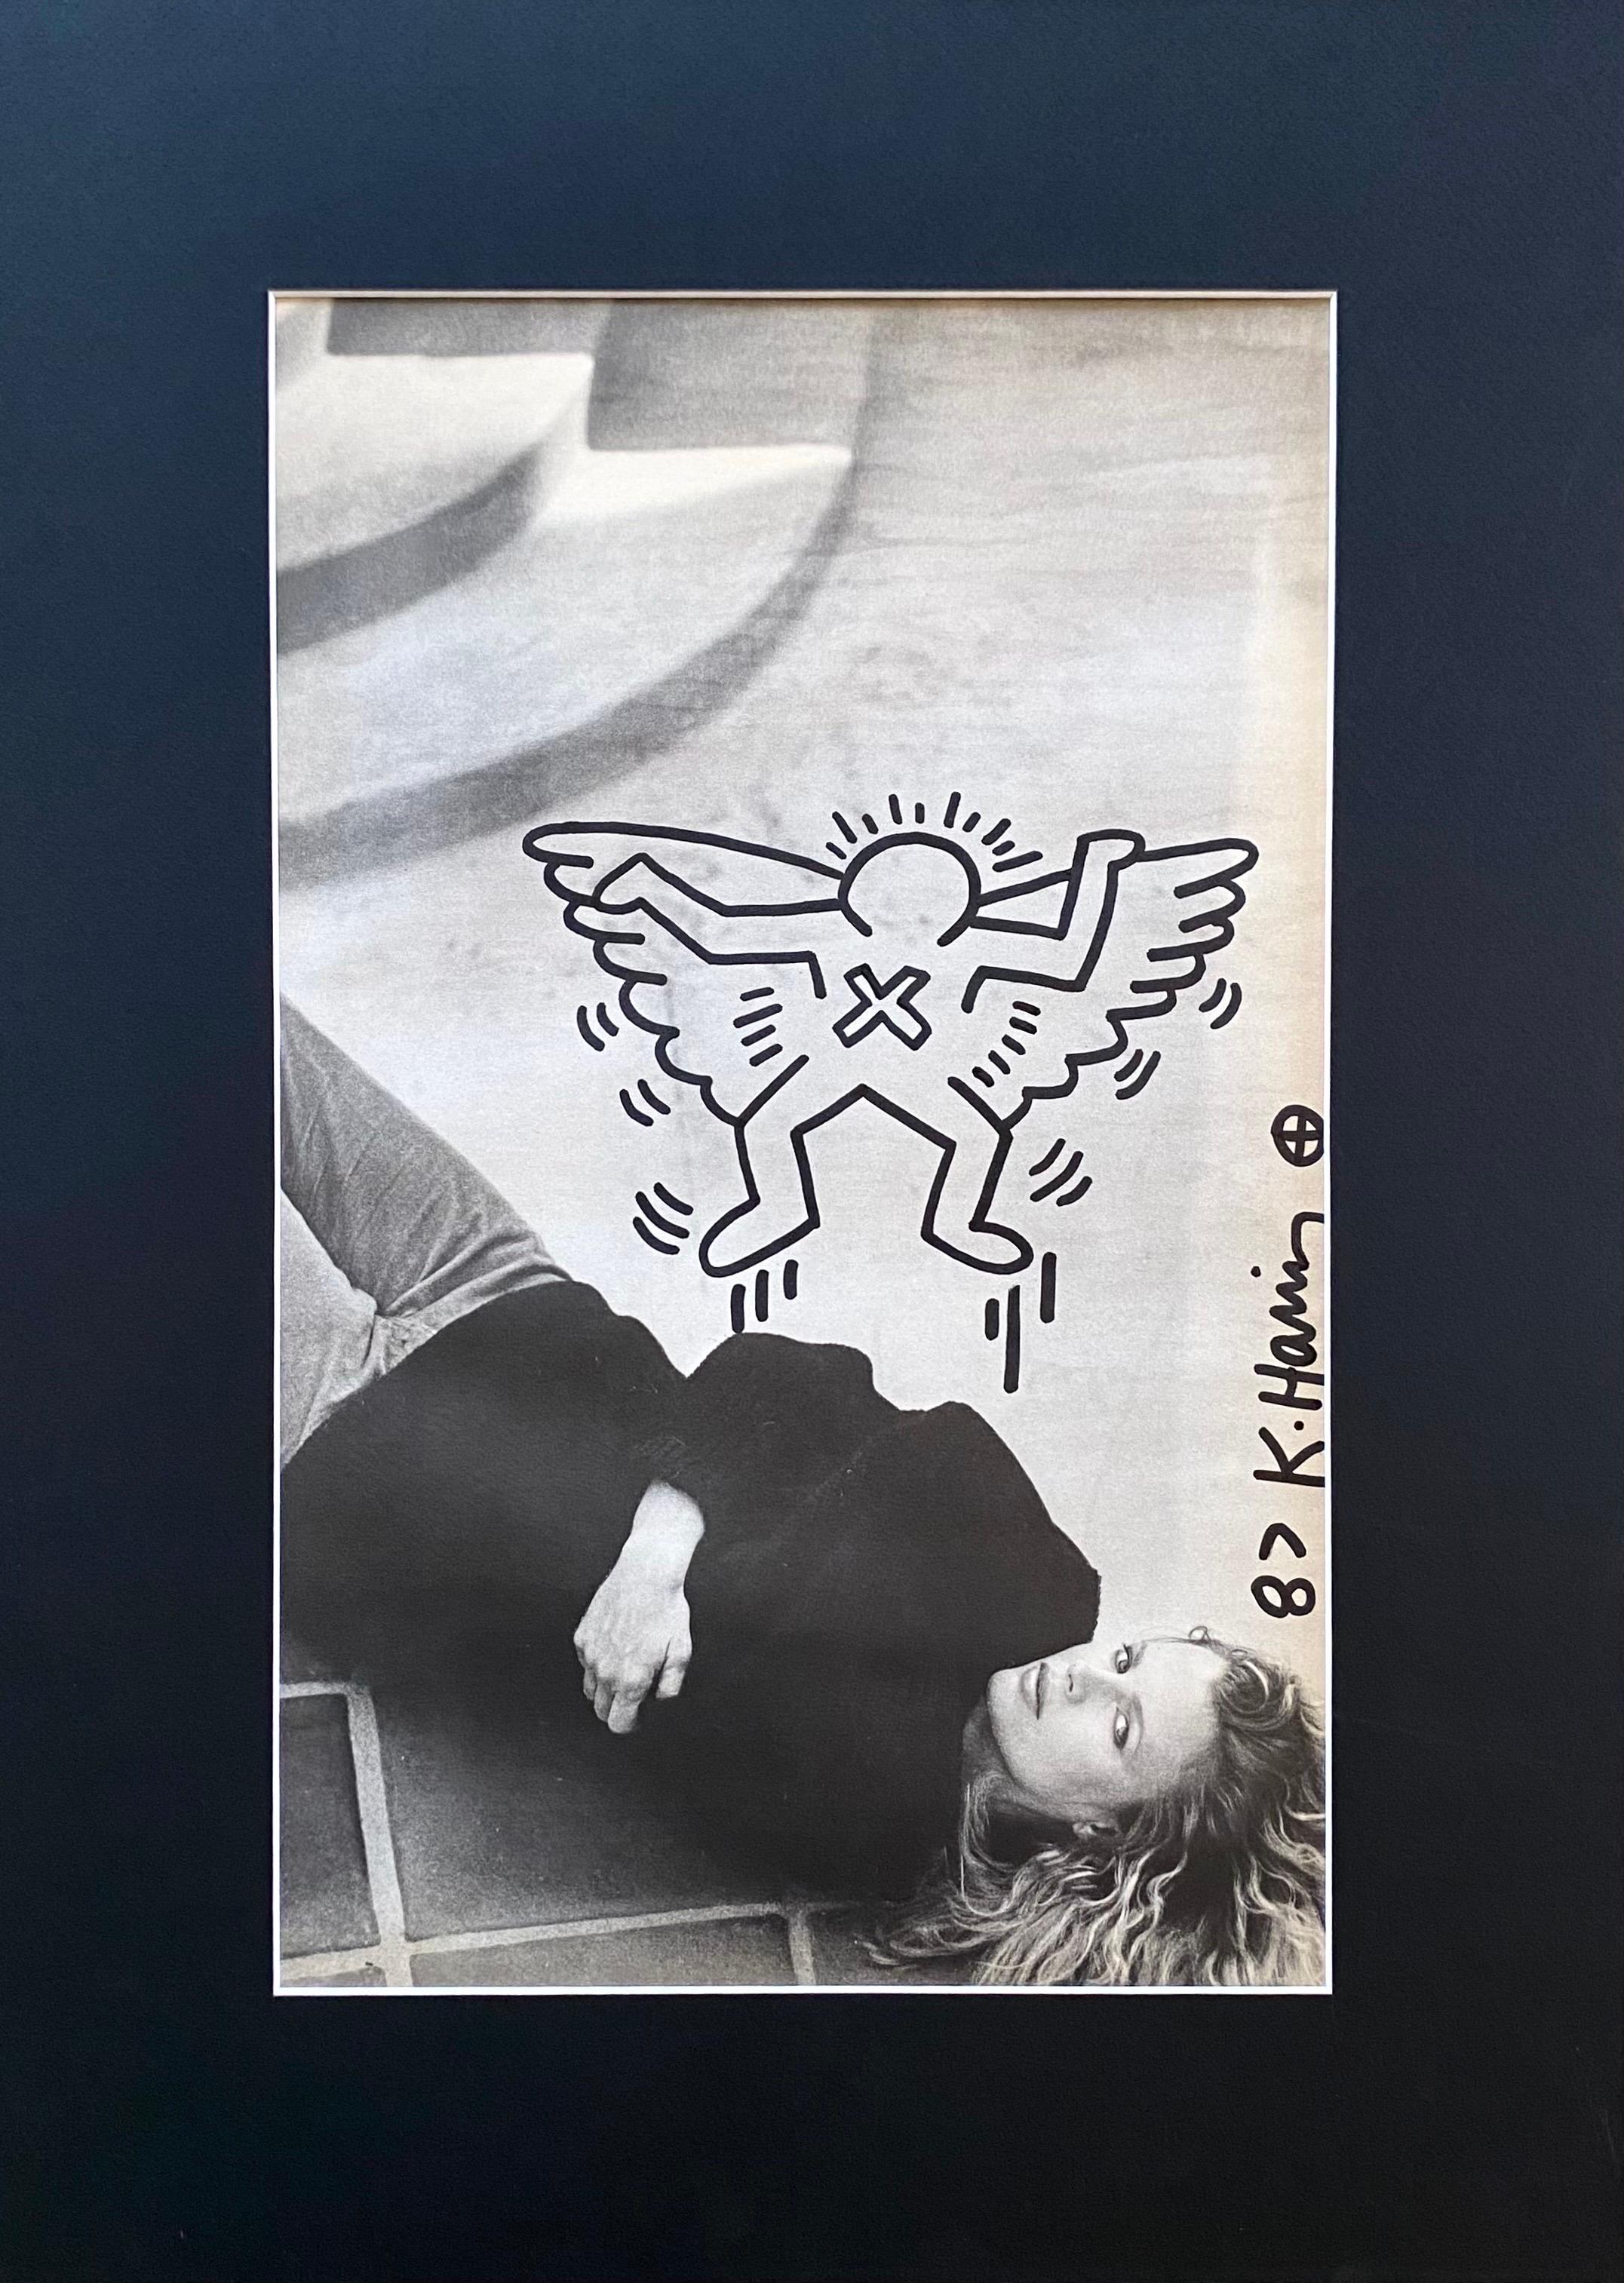 Einzigartiges Stück.
Seltene Zeichnung - Keith Haring - auf einer Magazinseite, die die amerikanische Schauspielerin Kim Basinger darstellt. Die Zeichnung erscheint auf der Rückseite der Seite, auf der ein zweites Foto von Kim Basinger zu sehen